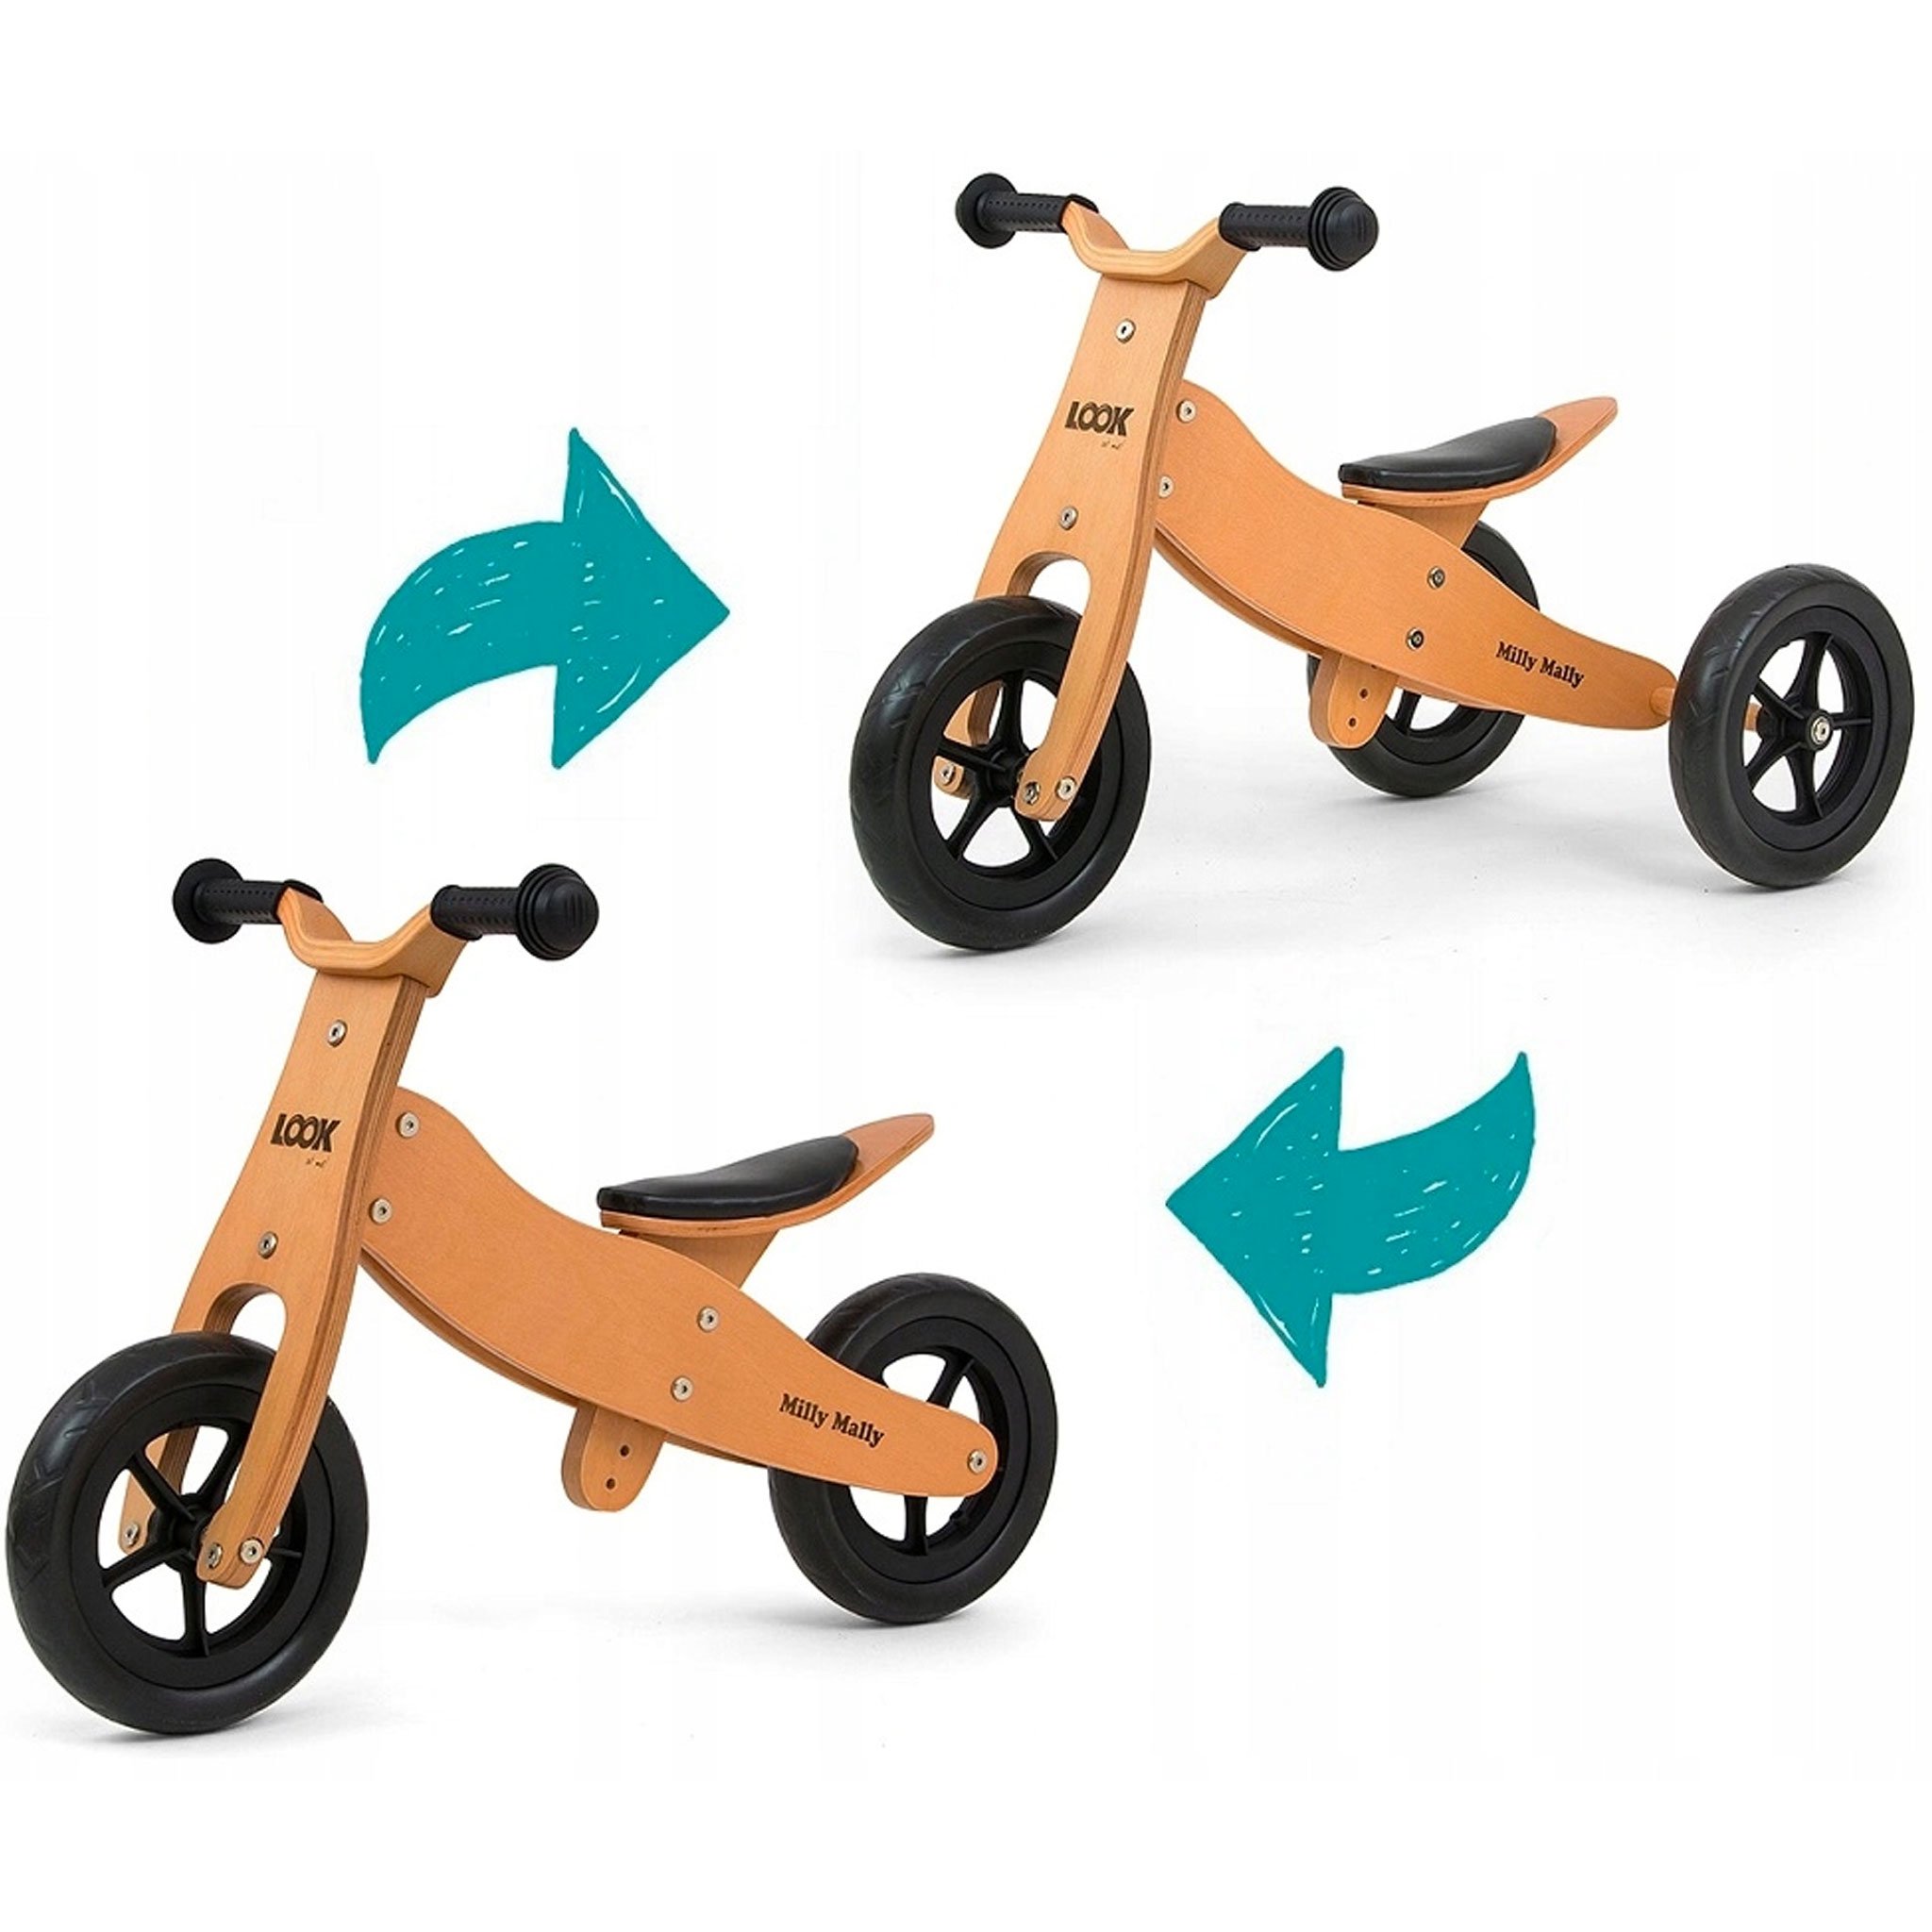 PM2770-triciclo-legno-cavalcabile-ruote-bici-senza-pedali-bambini-equilibrio-balance-bike-giochi-esterno-mobilita-crescita-legno-betulla-all-terrain-trasforma-2-in-1.jpg